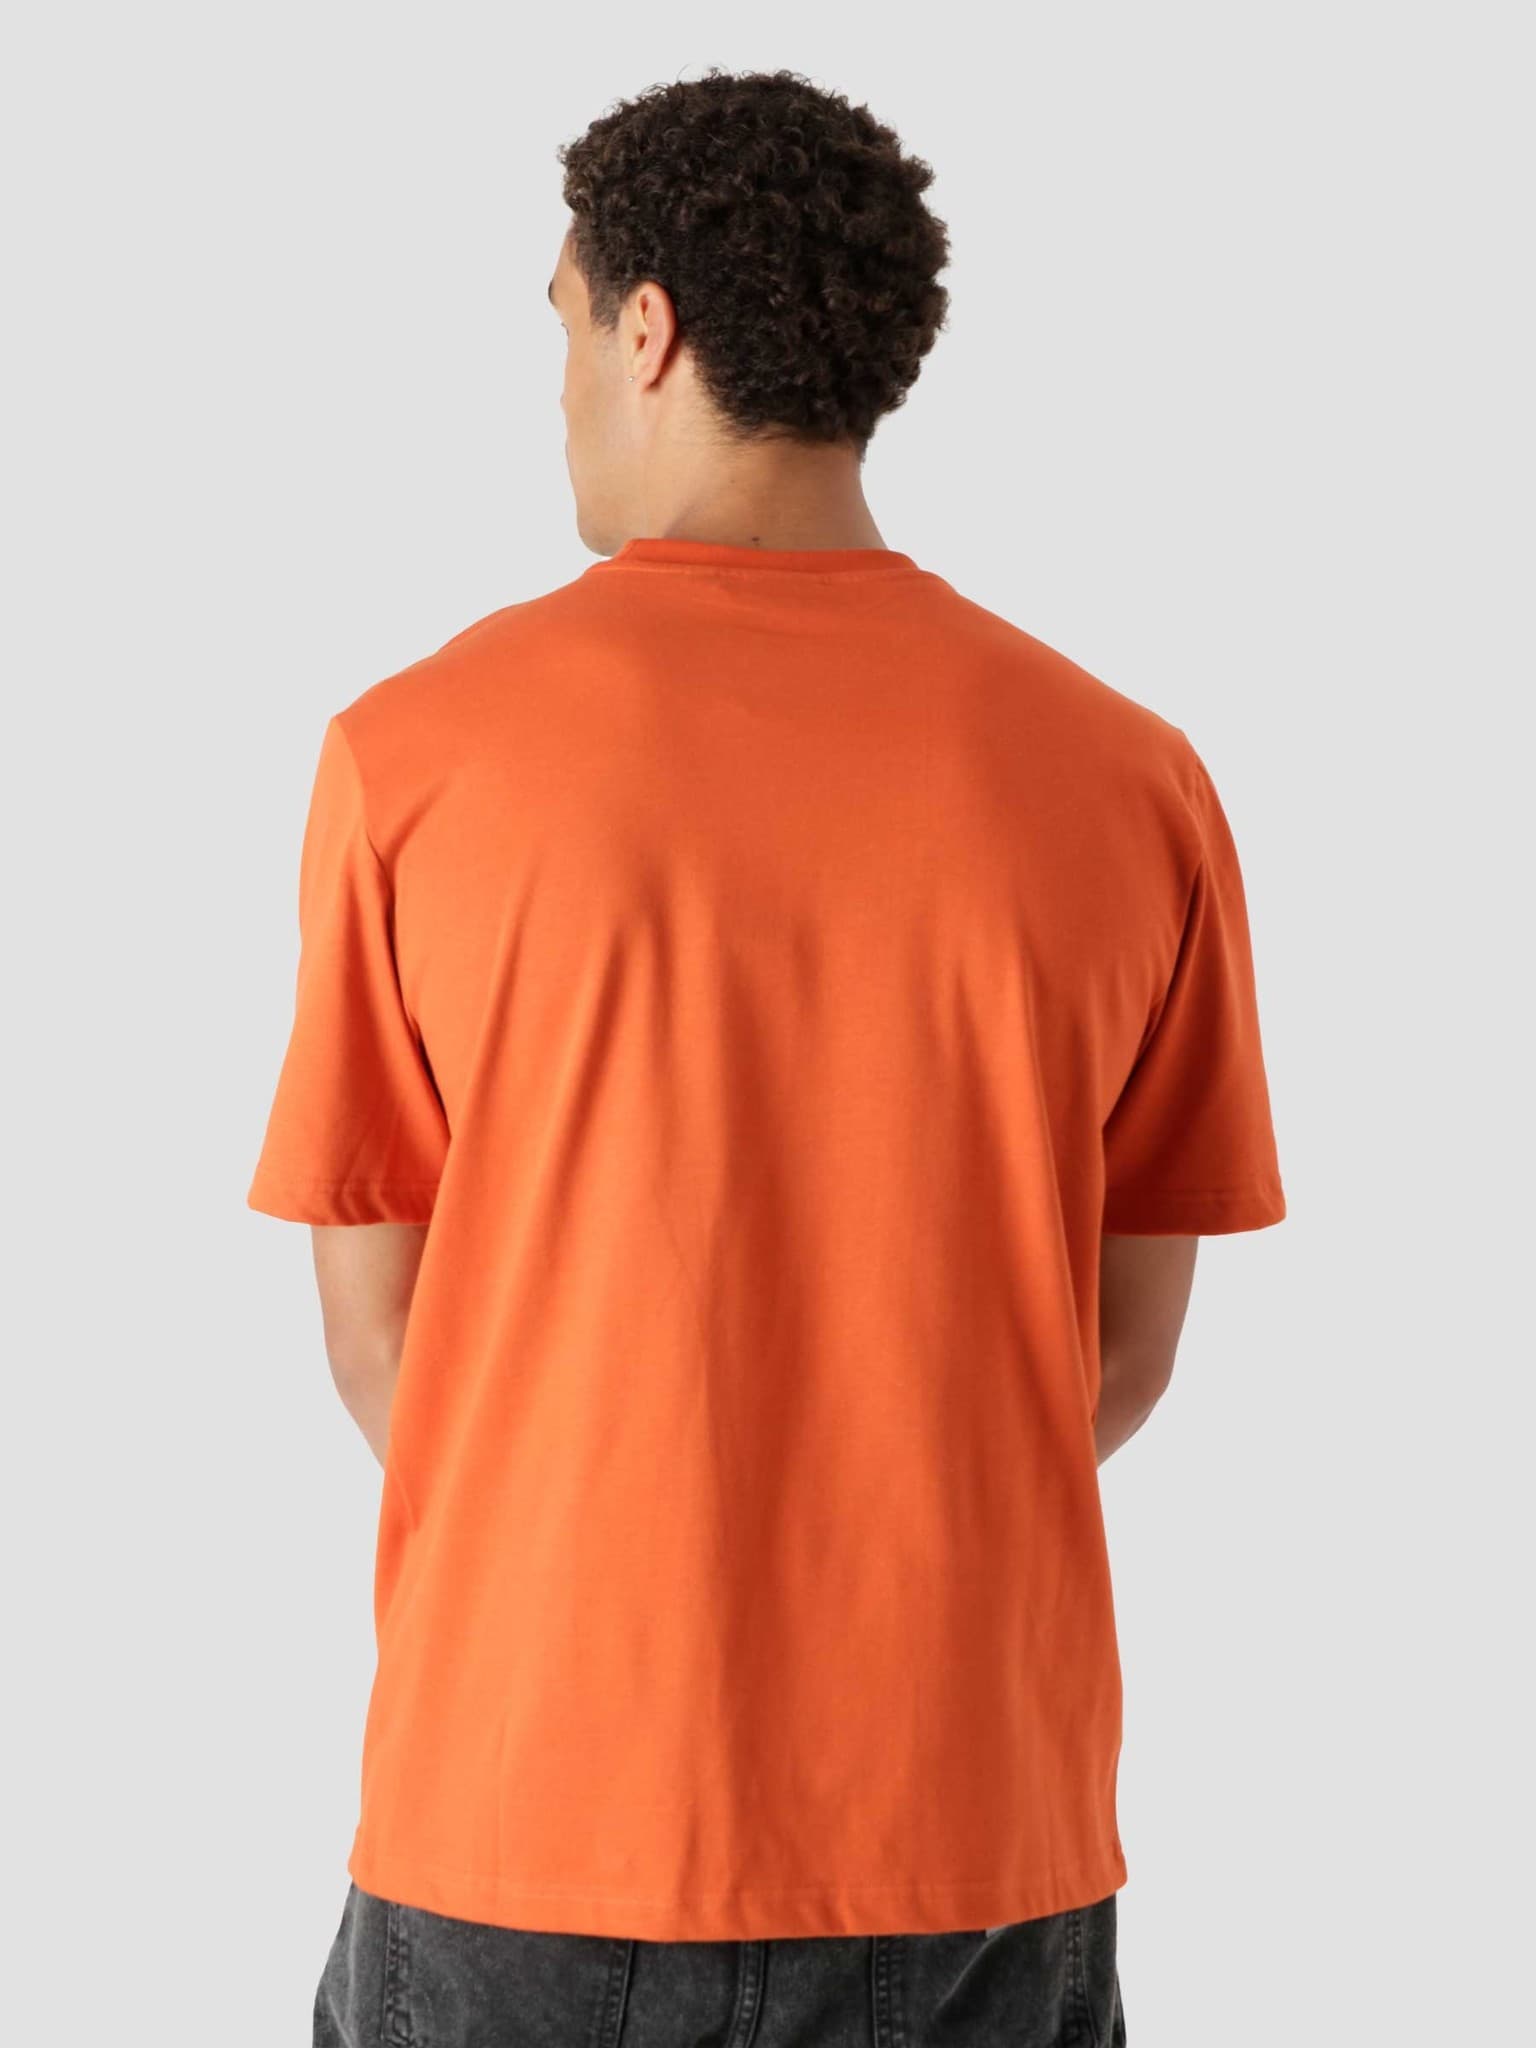 Alias T-shirt Orange Clay 2122002